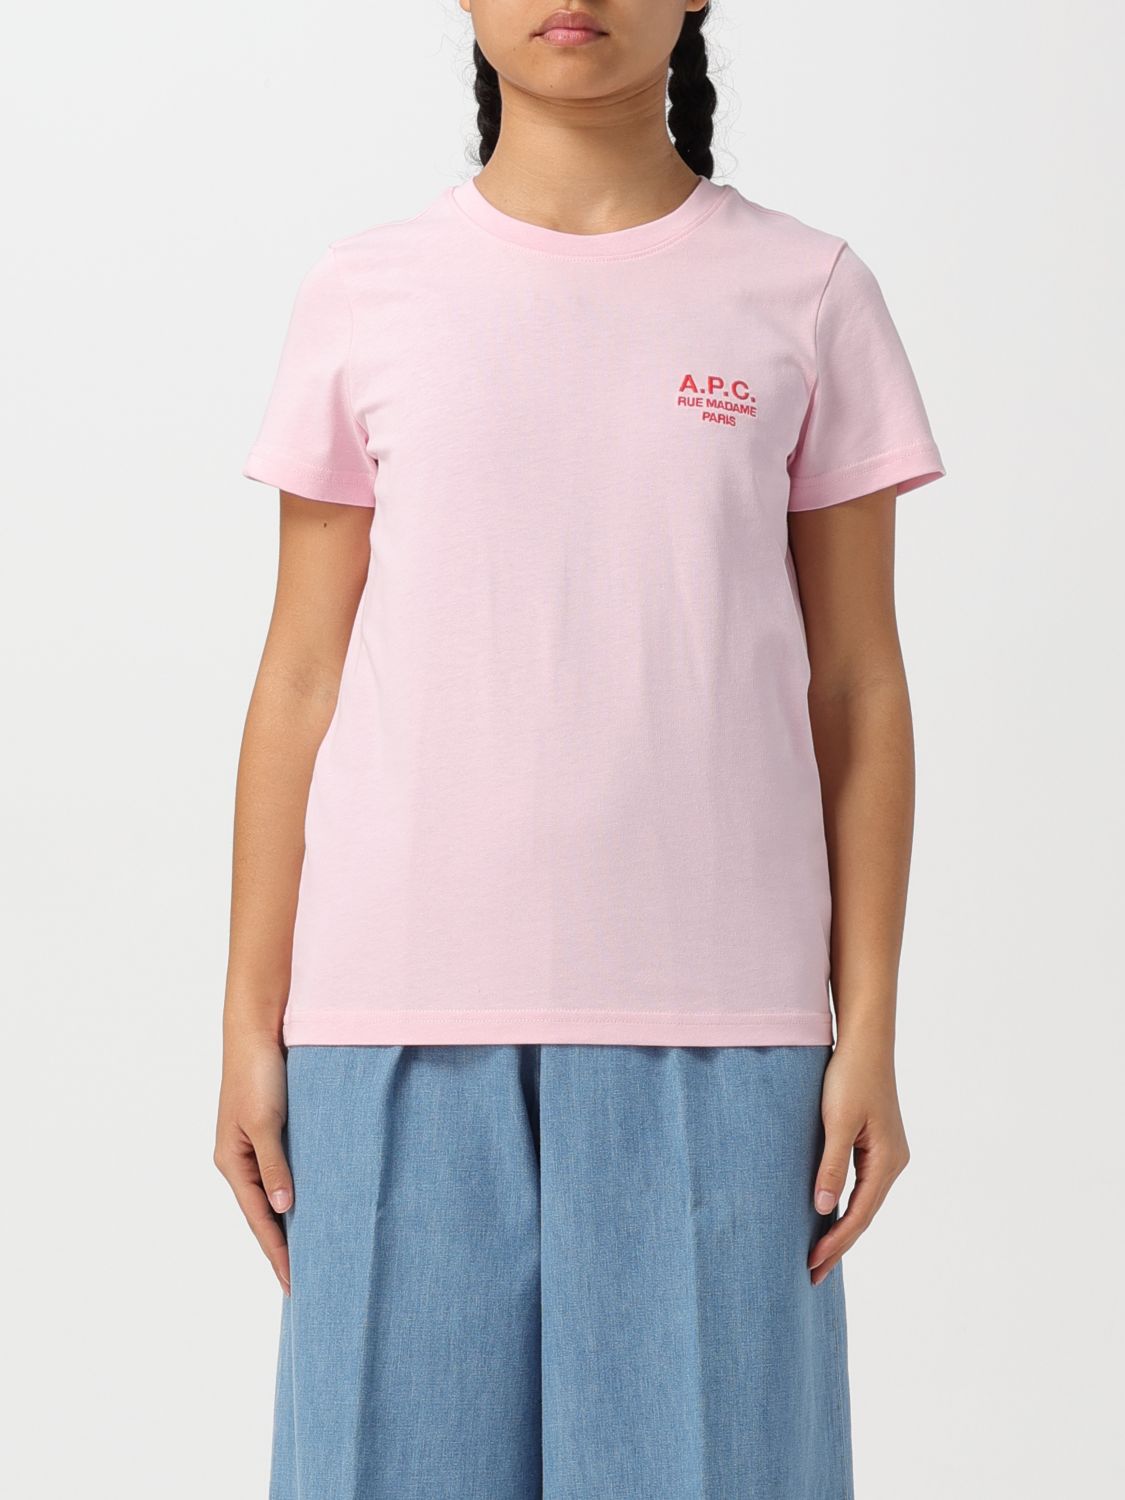 Apc T-shirt A.p.c. Woman Colour Pink